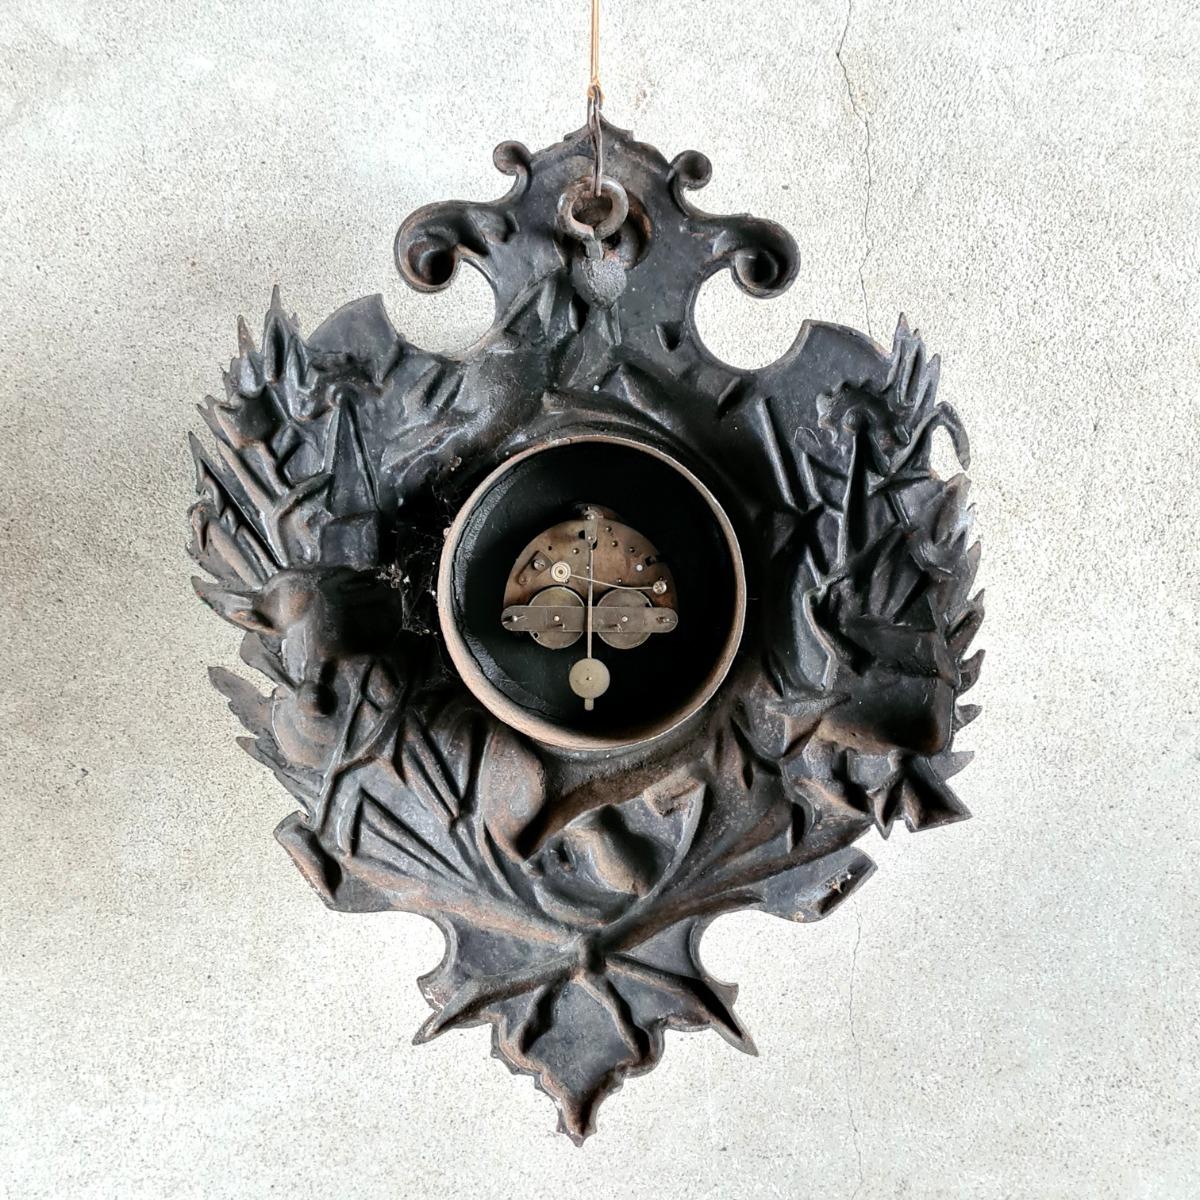 Antique cast iron clock